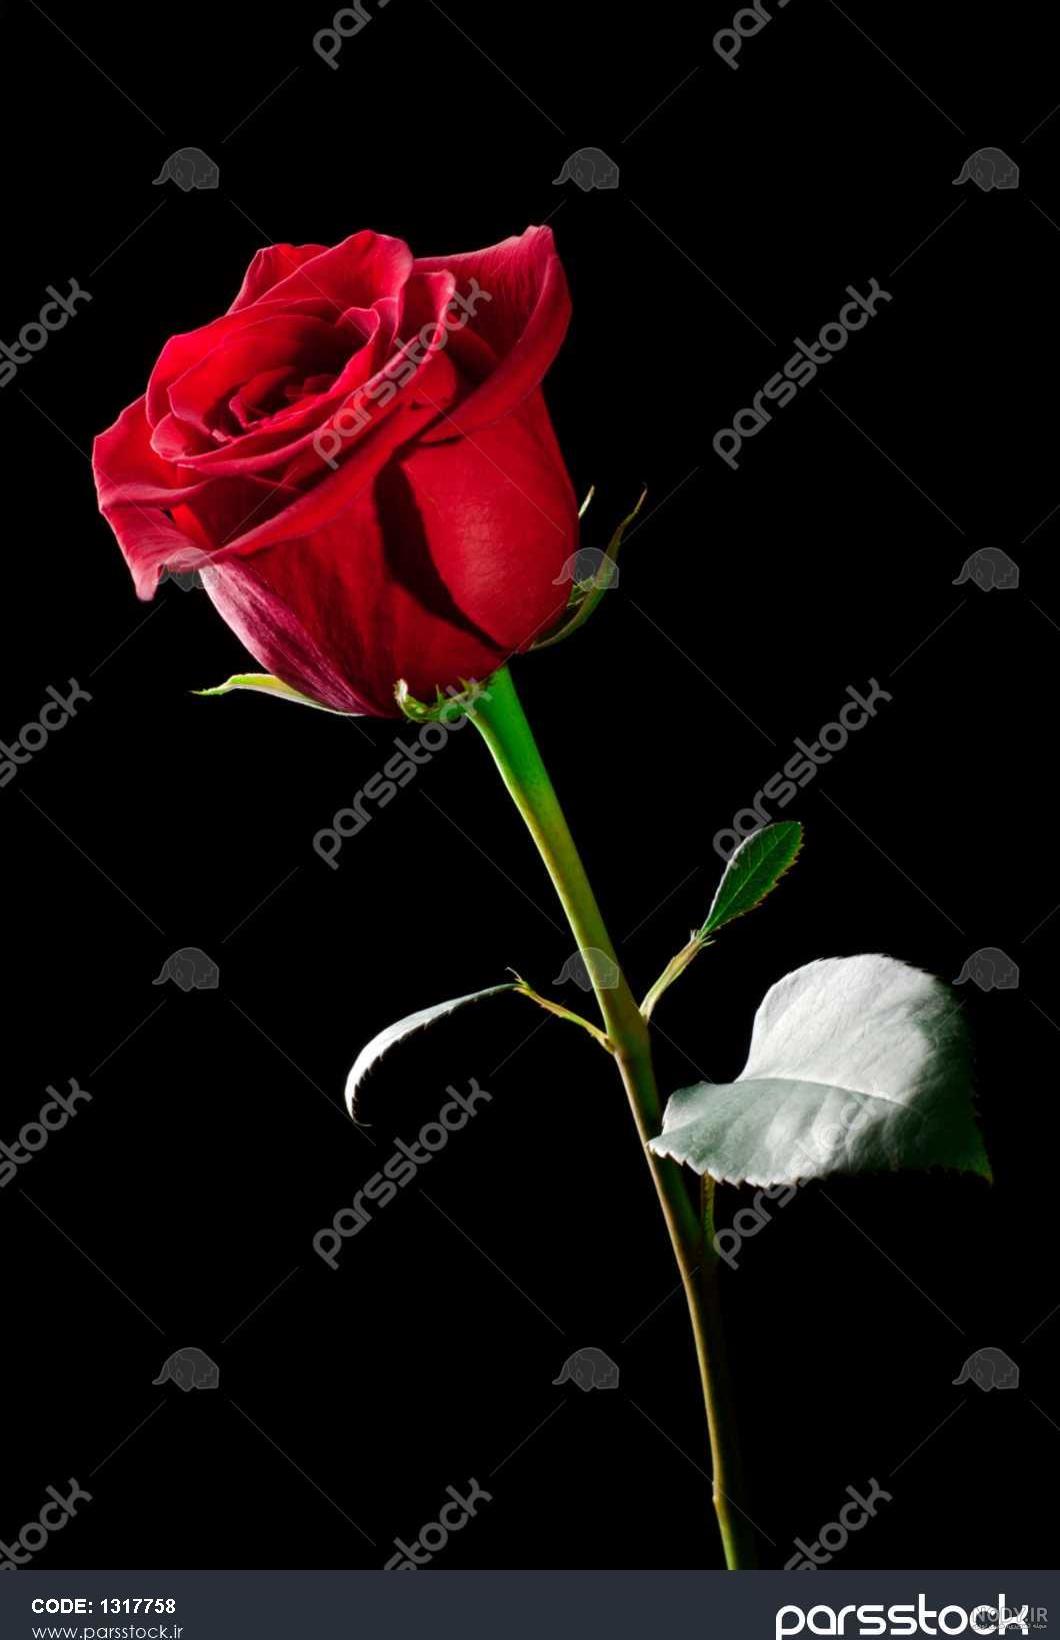 عکس گل رز قرمز با پس زمینه مشکی